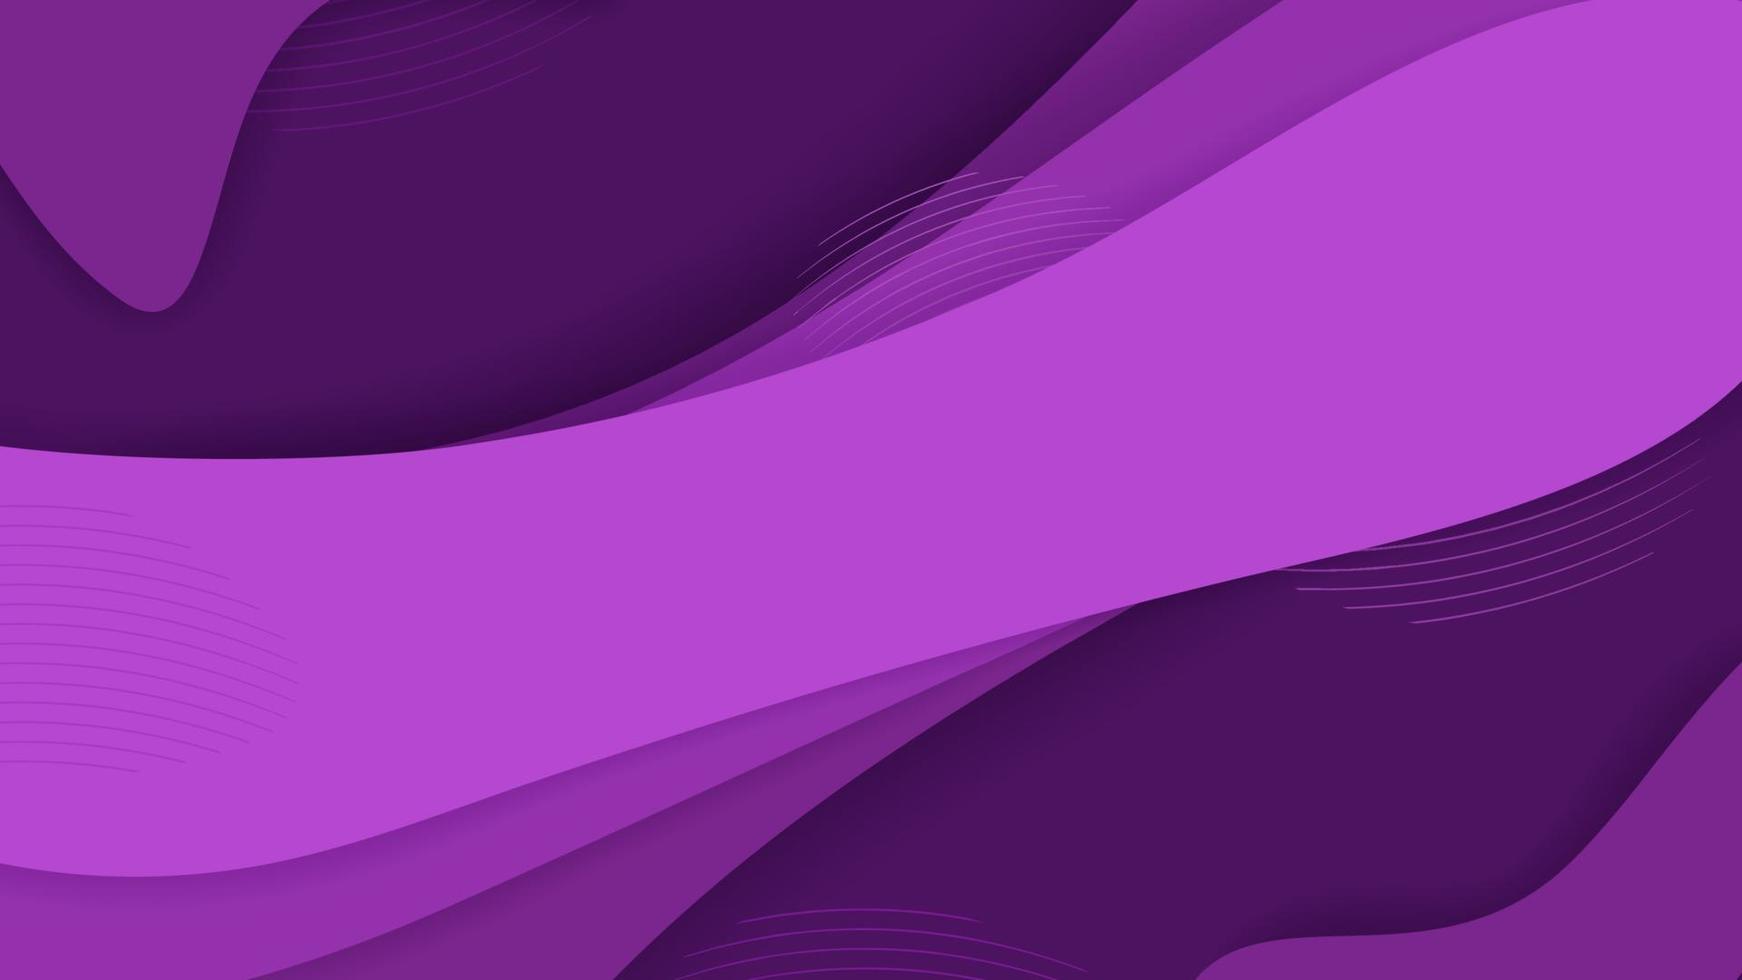 Formas de onda 3d de degradado púrpura futurista con ilustración gráfica de vector de fondo de color de línea. diseño creativo de fondo geométrico de neón líquido colorido abstracto